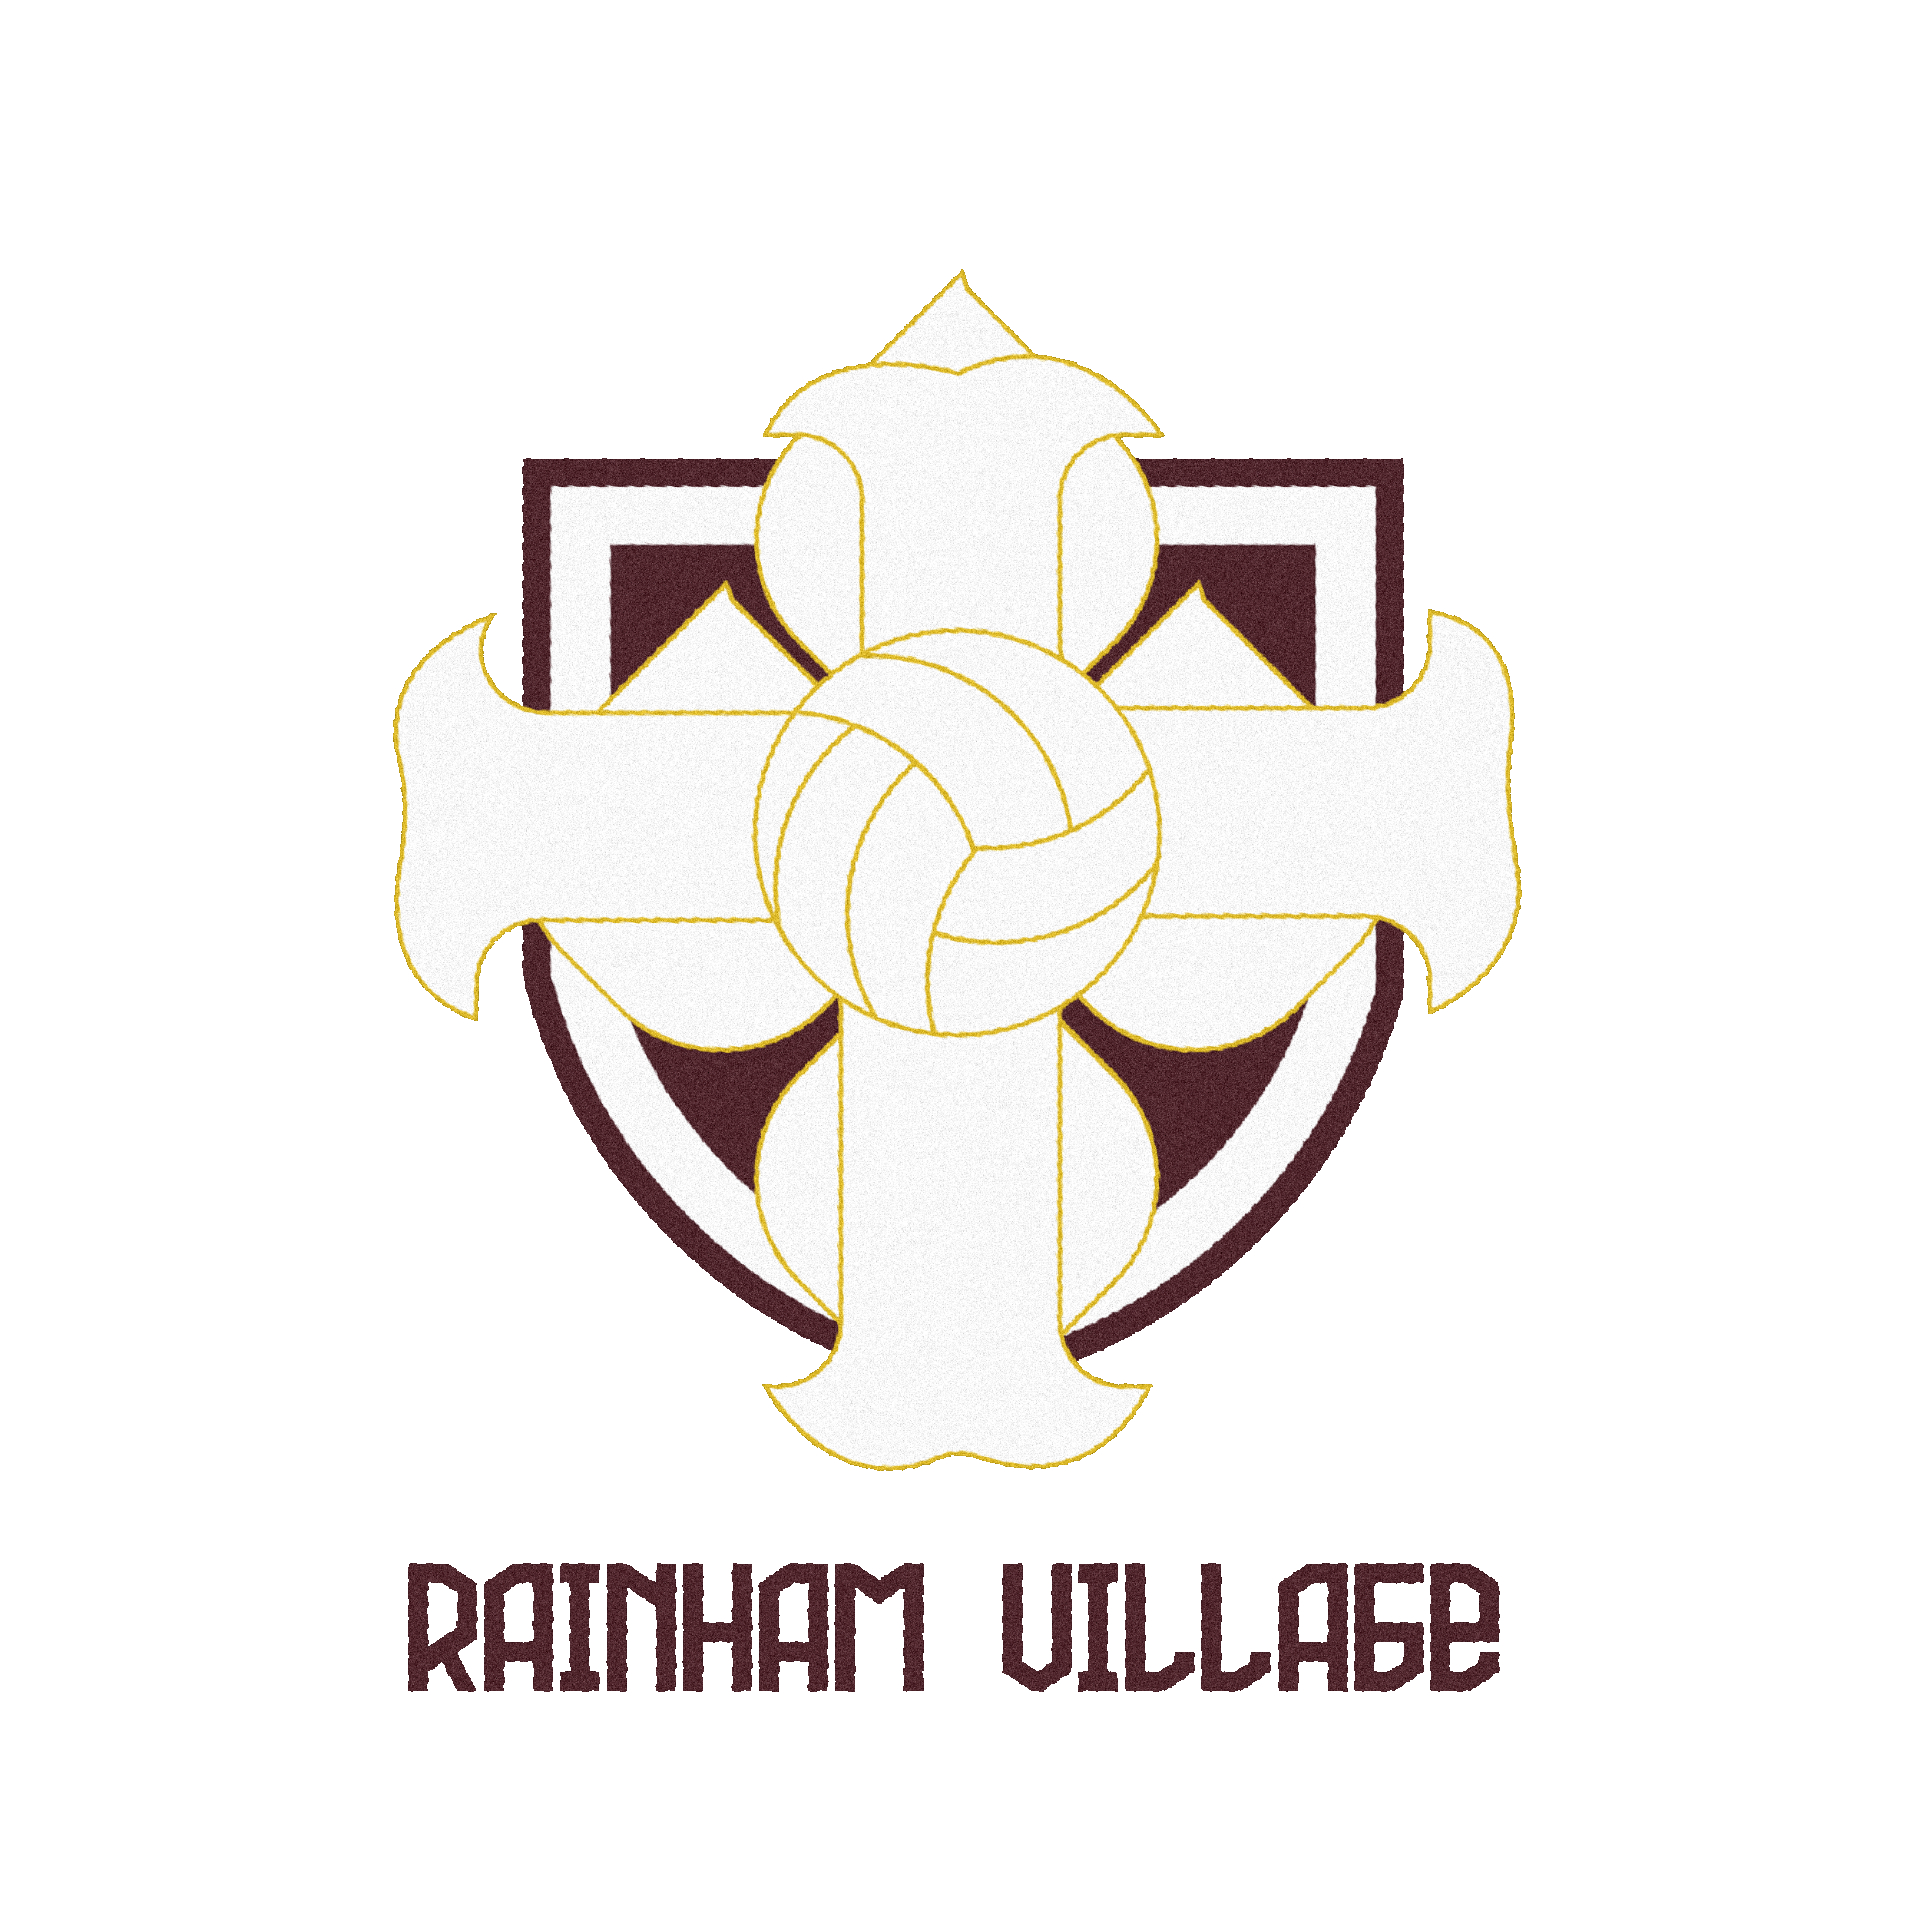 This is the Rainham club badge.